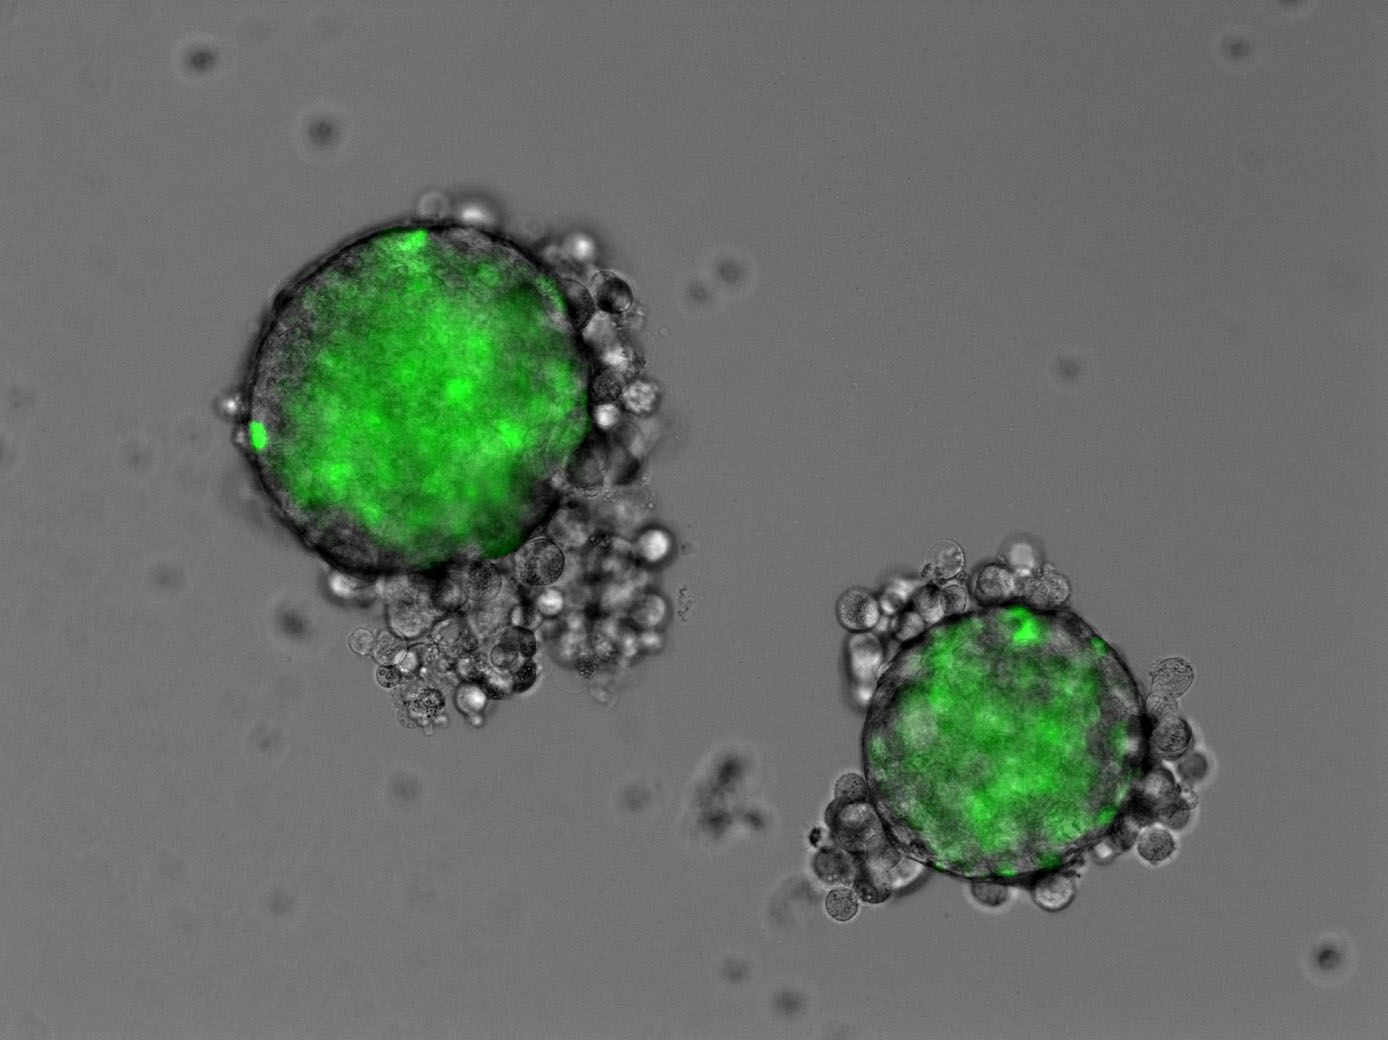 緑色蛍光を示す膵癌幹細胞のスフェロイド形成の観察
